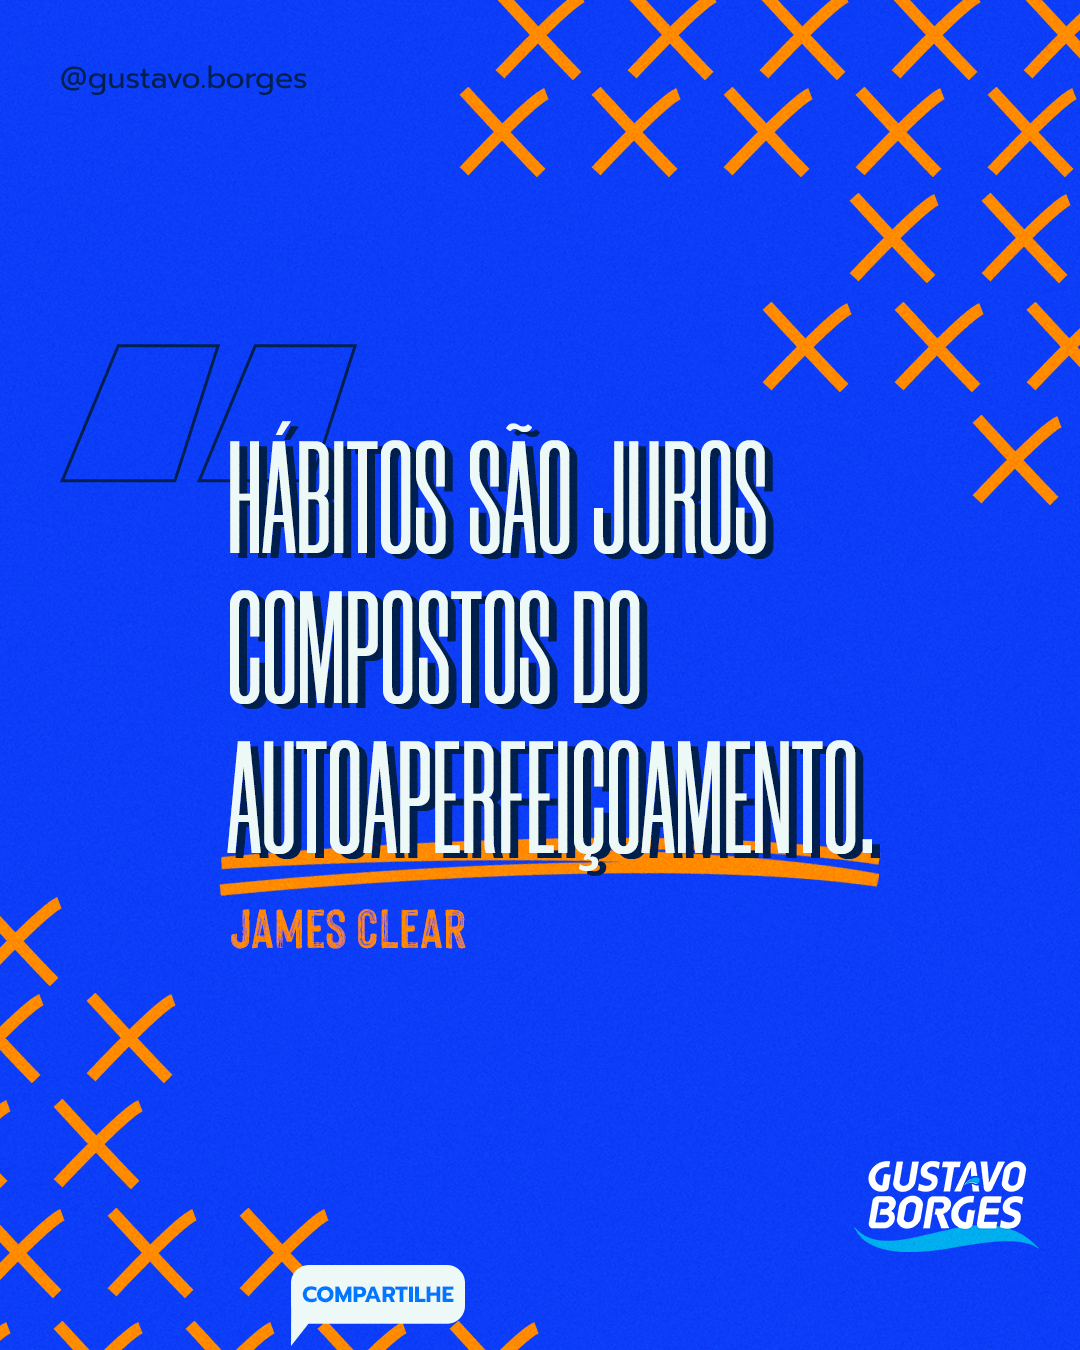 Frase de James Clear: "Hábitos são juros compostos do autoaperfeiçoamento."